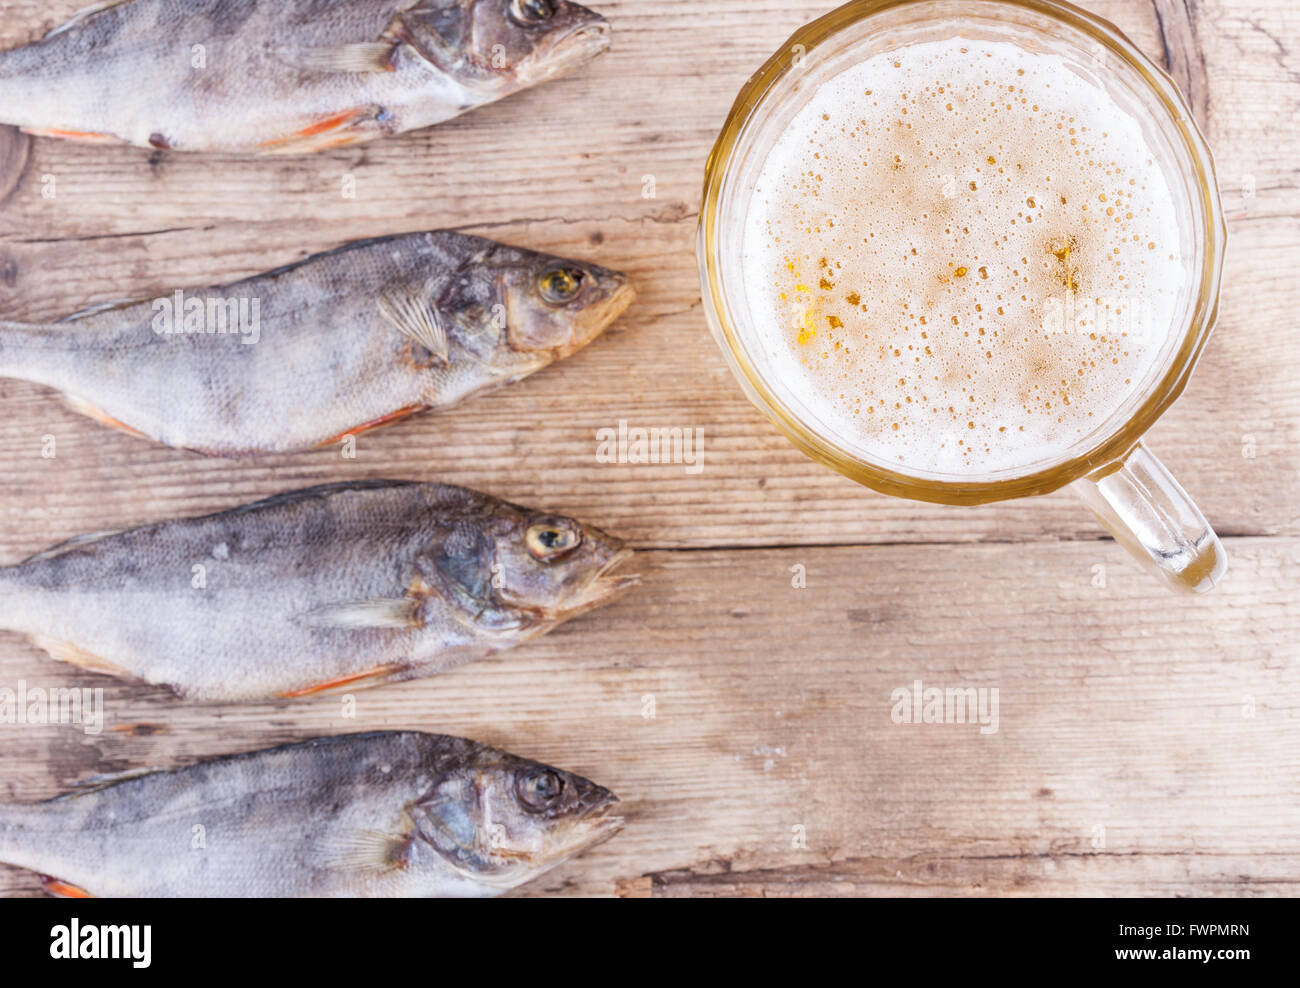 La cerveza y el pescado en el fondo de la vista de la mesa Foto de stock